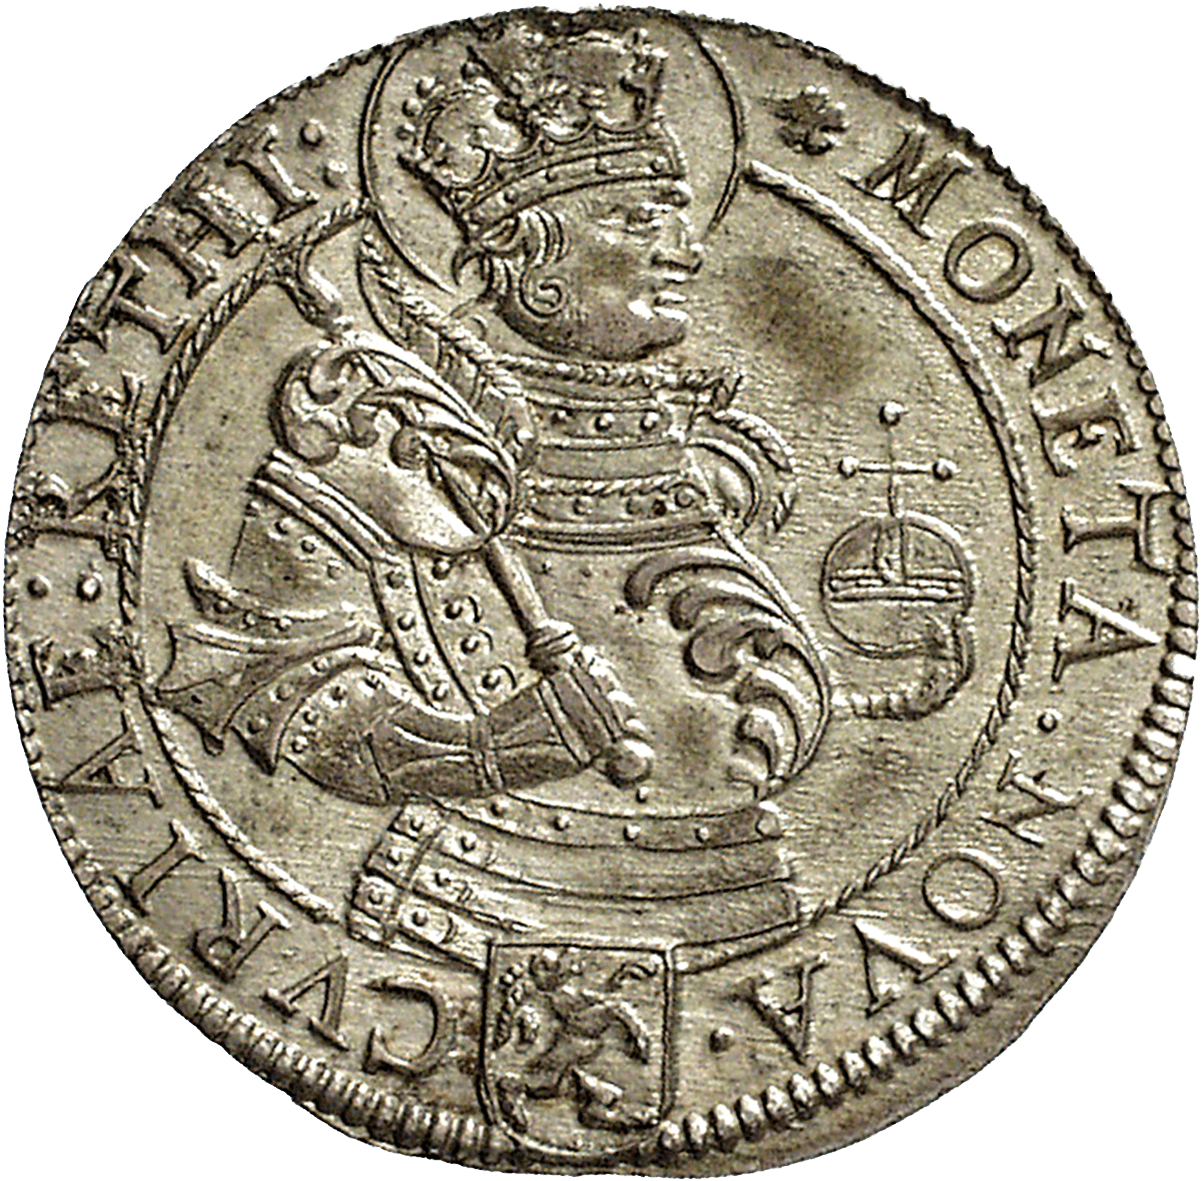 Holy Roman Empire, City of Chur, 10 Kreuzer 1631 (obverse)